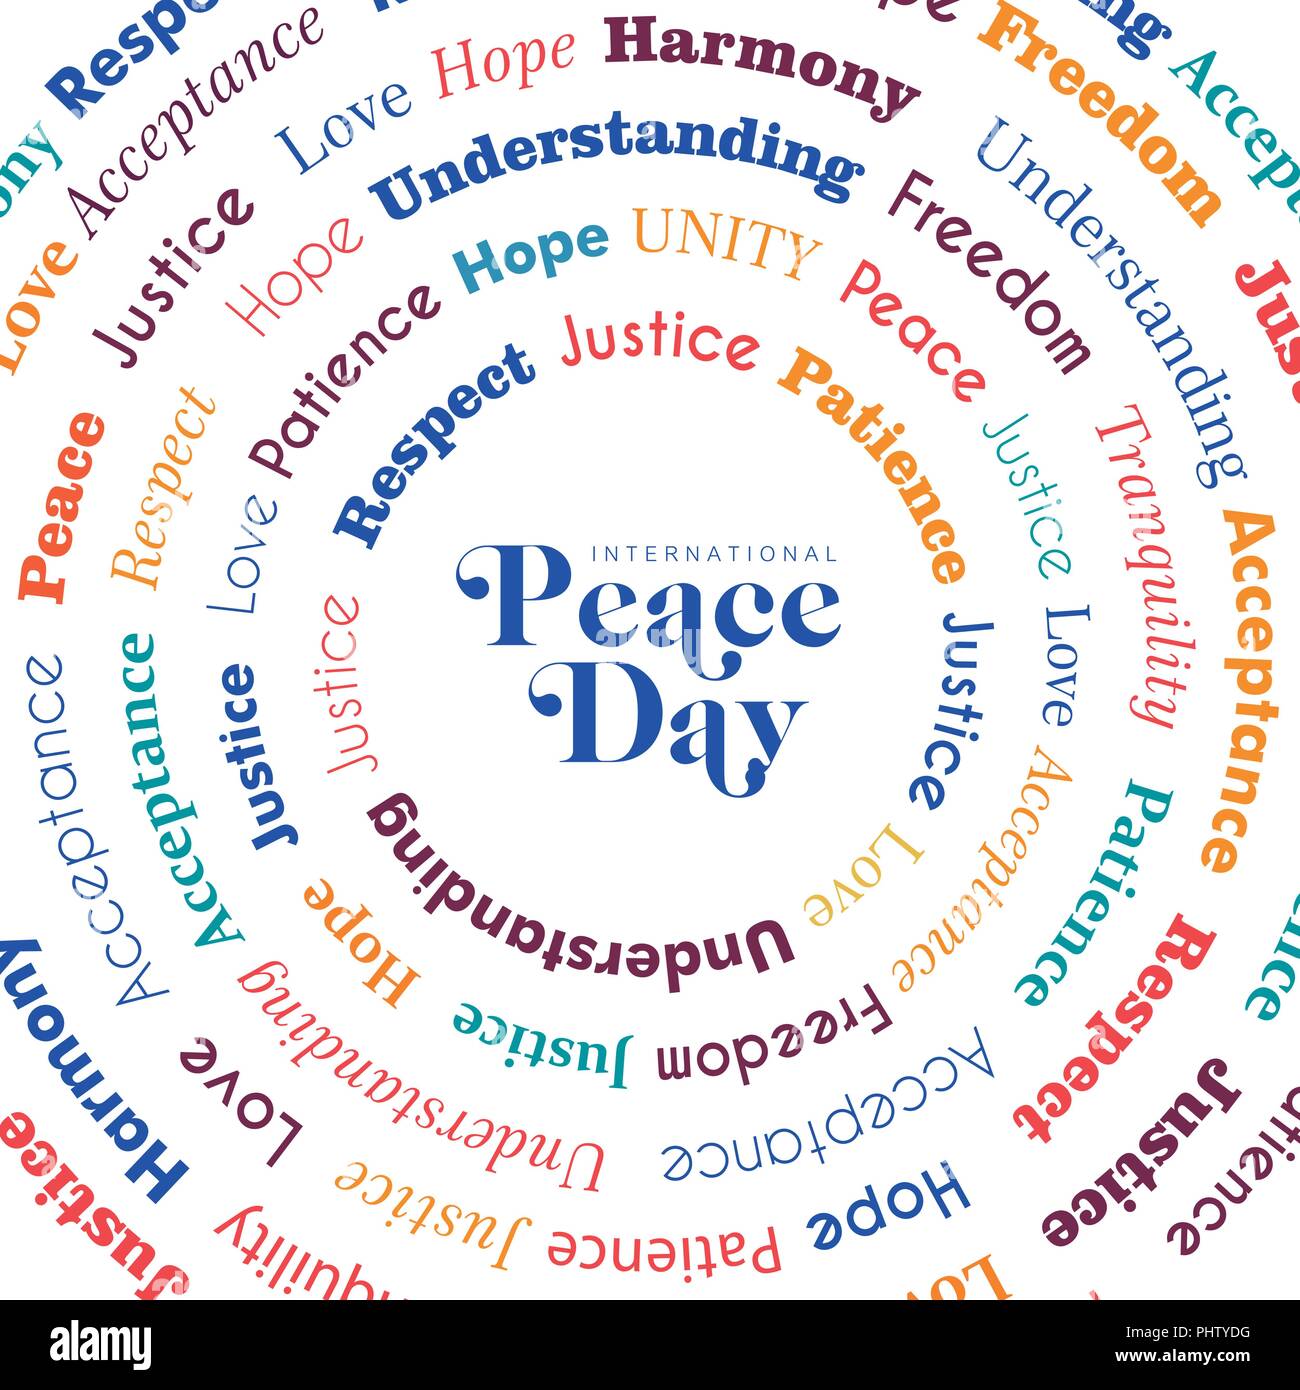 Internationaler Friedenstag Grußkarte Design mit ruhigen Worten für ganz spezielle Feier im farbenfrohen Stil. EPS 10 Vektor. Stock Vektor